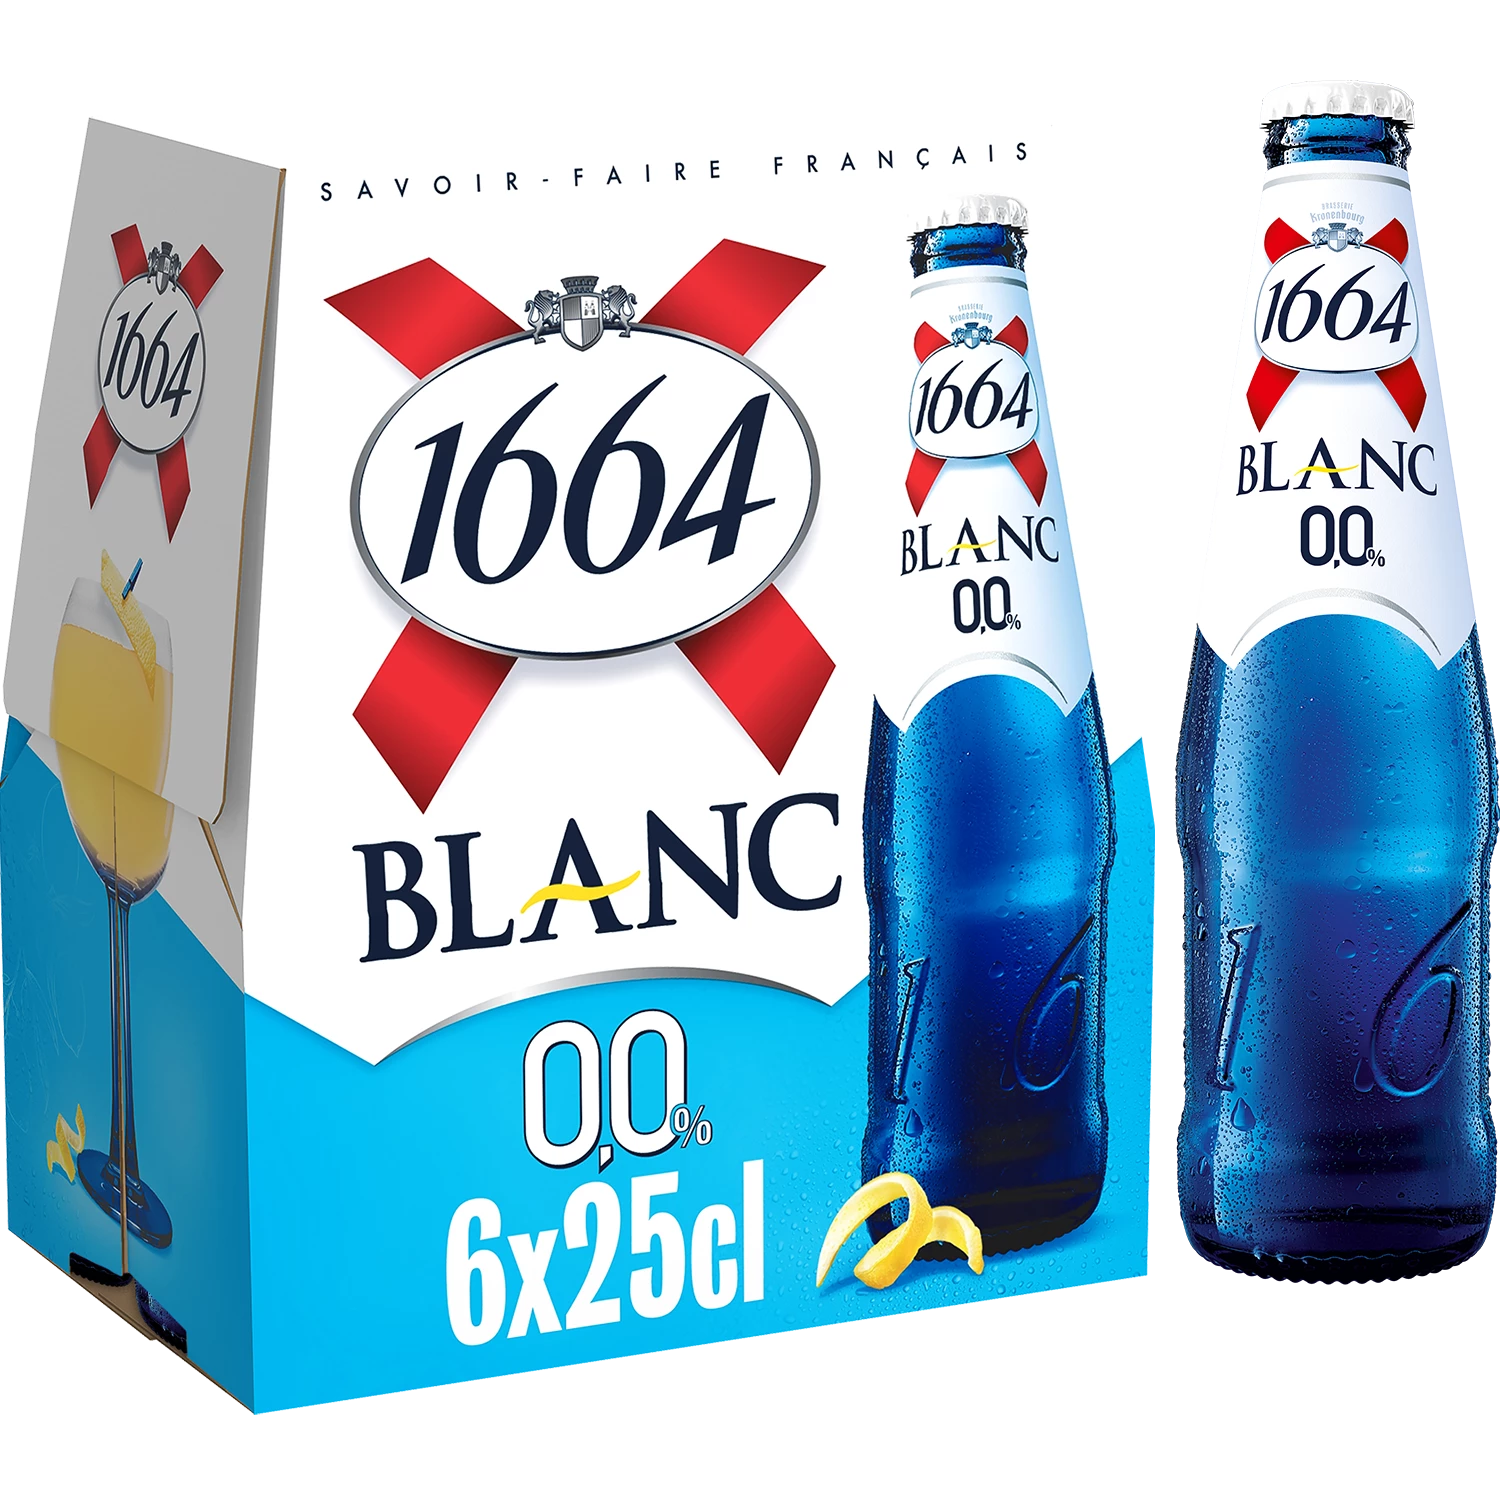 Cerveza blanca sin alcohol - 1664